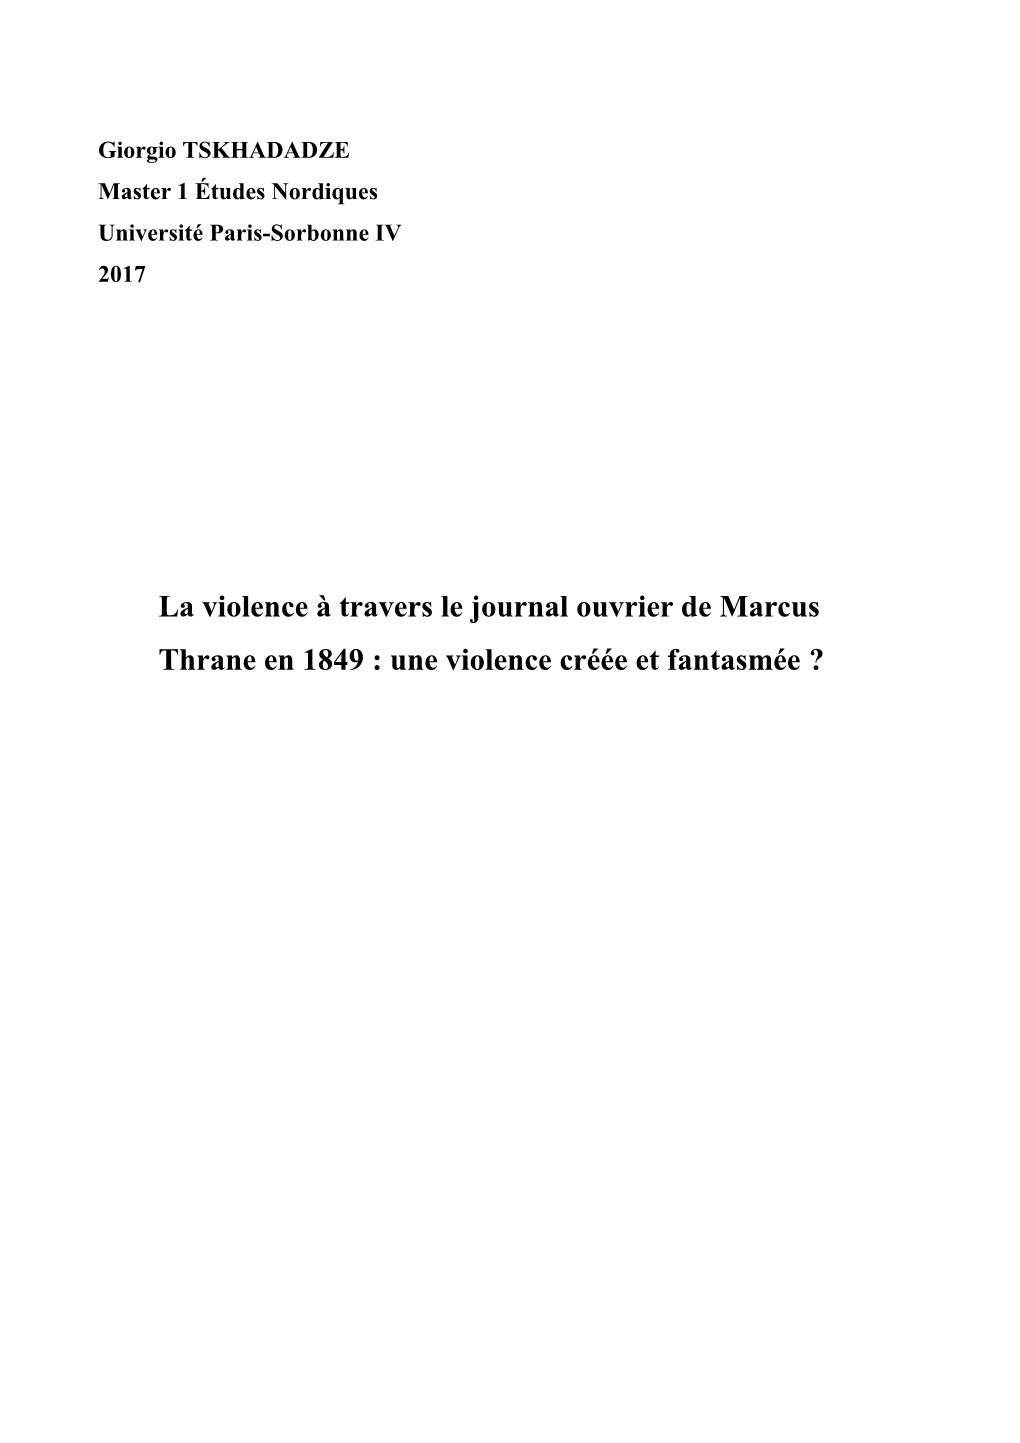 La Violence À Travers Le Journal Ouvrier De Marcus Thrane En 1849 : Une Violence Créée Et Fantasmée ? Table Des Matières